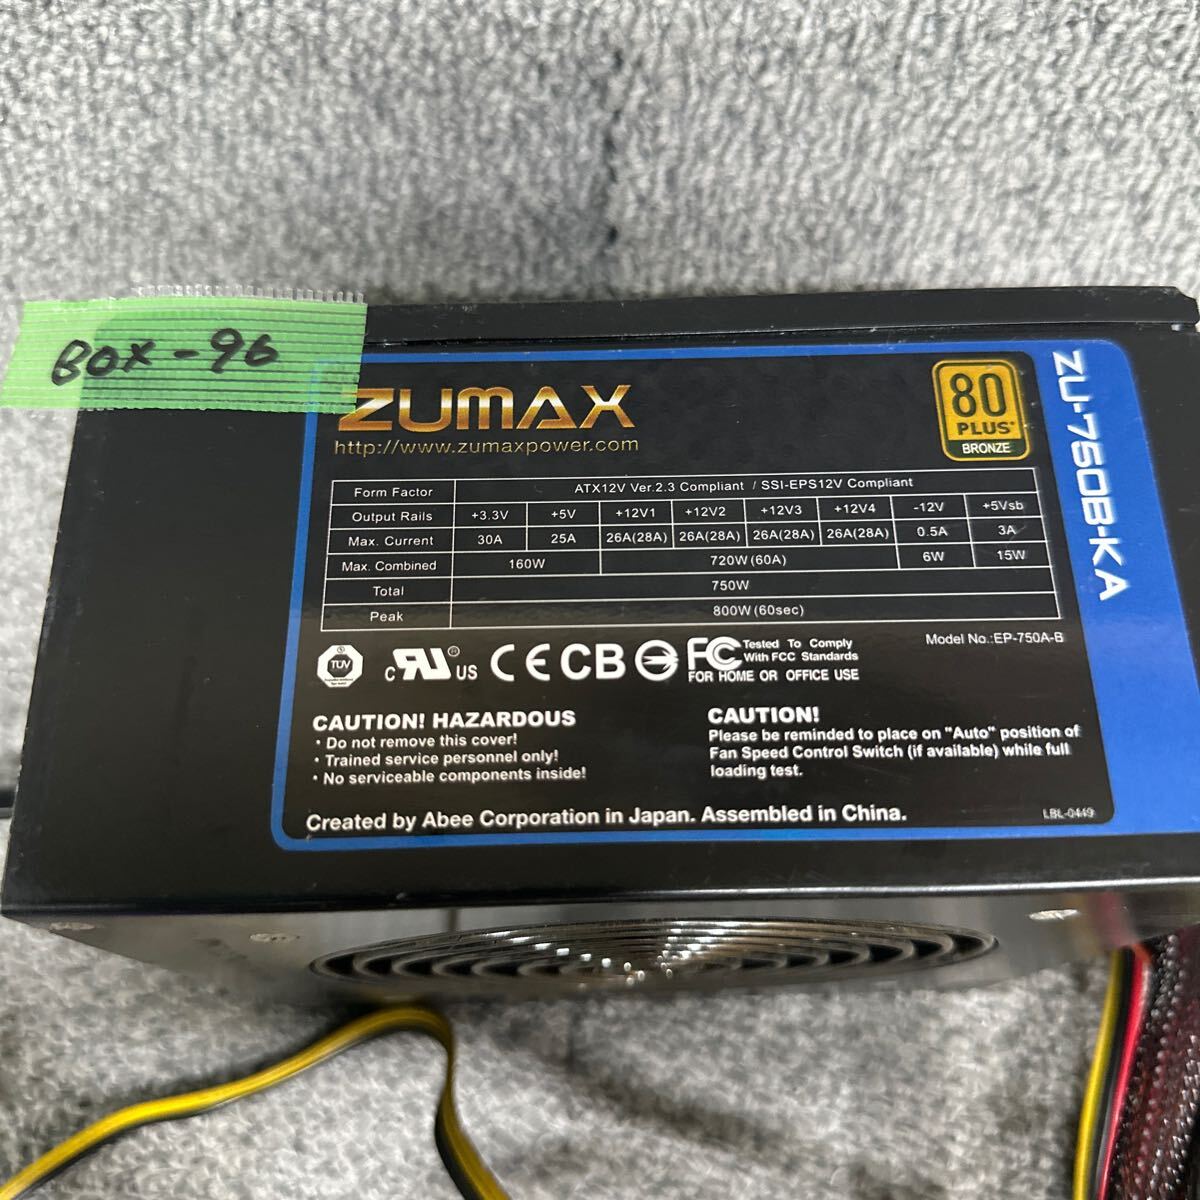 GK супер-скидка BOX-96 PC источник питания BOX ZUMAX ZU-750B-KA 750W 80PLUS BRONZE источник питания напряжение подтверждено б/у товар 